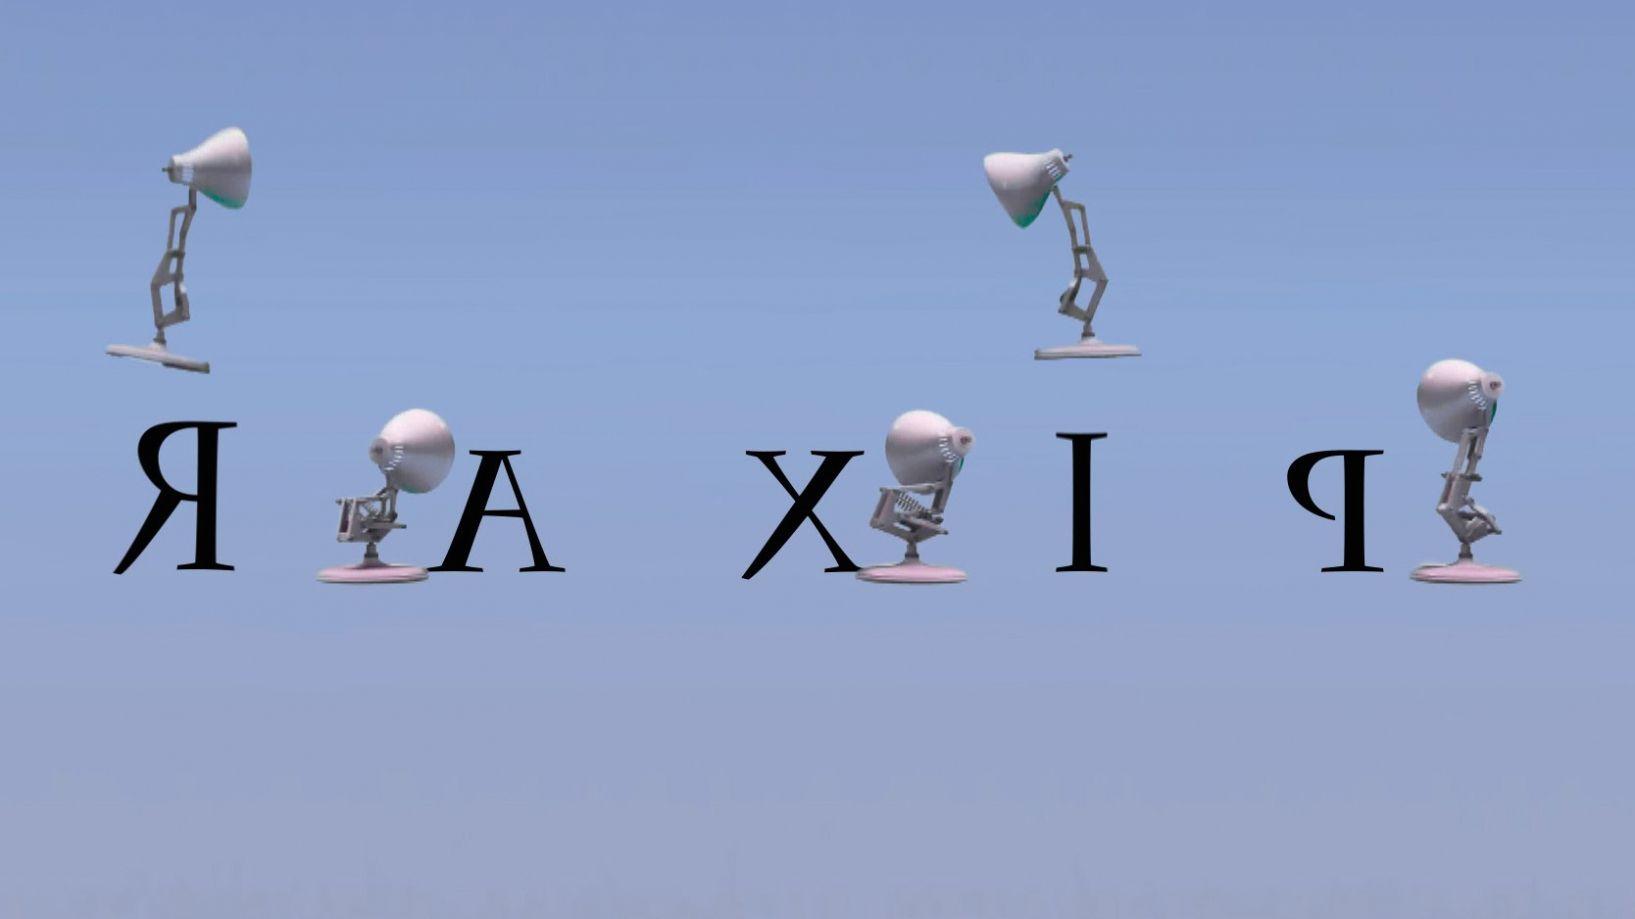 Pixar Lamp Logo - Lamps: 189 Five Pixar Lamps Spoof Pixar Lamp Luxo Jr Logo With